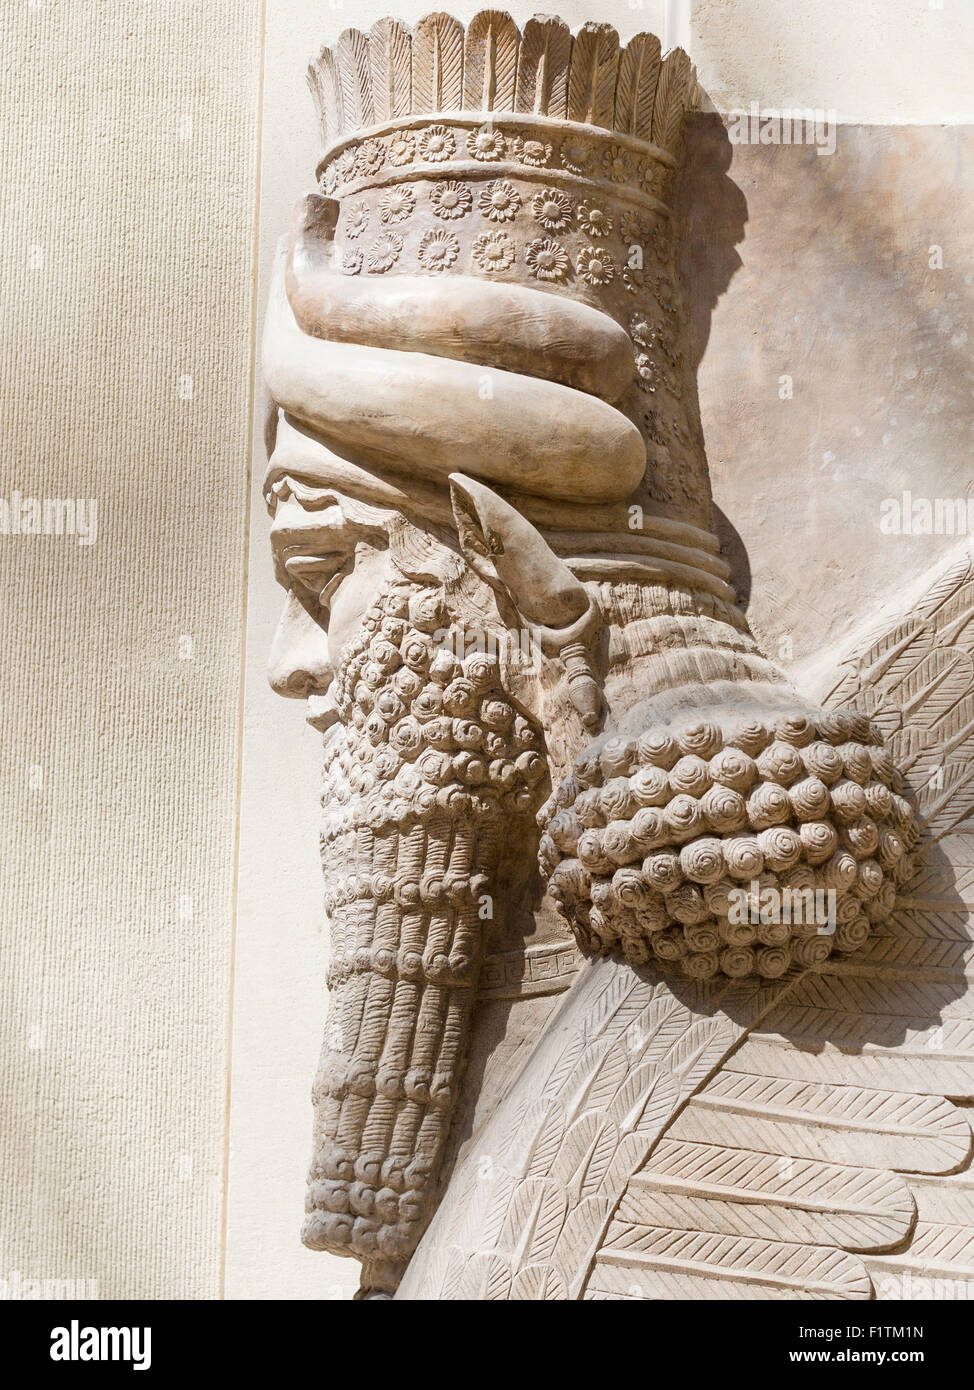 Uomo alato con testa di Bull: lato testa di dettaglio. Originariamente parte di Sargon II capitale della Dur Sharrukin, ora Khorsabad. Dal basso Foto Stock